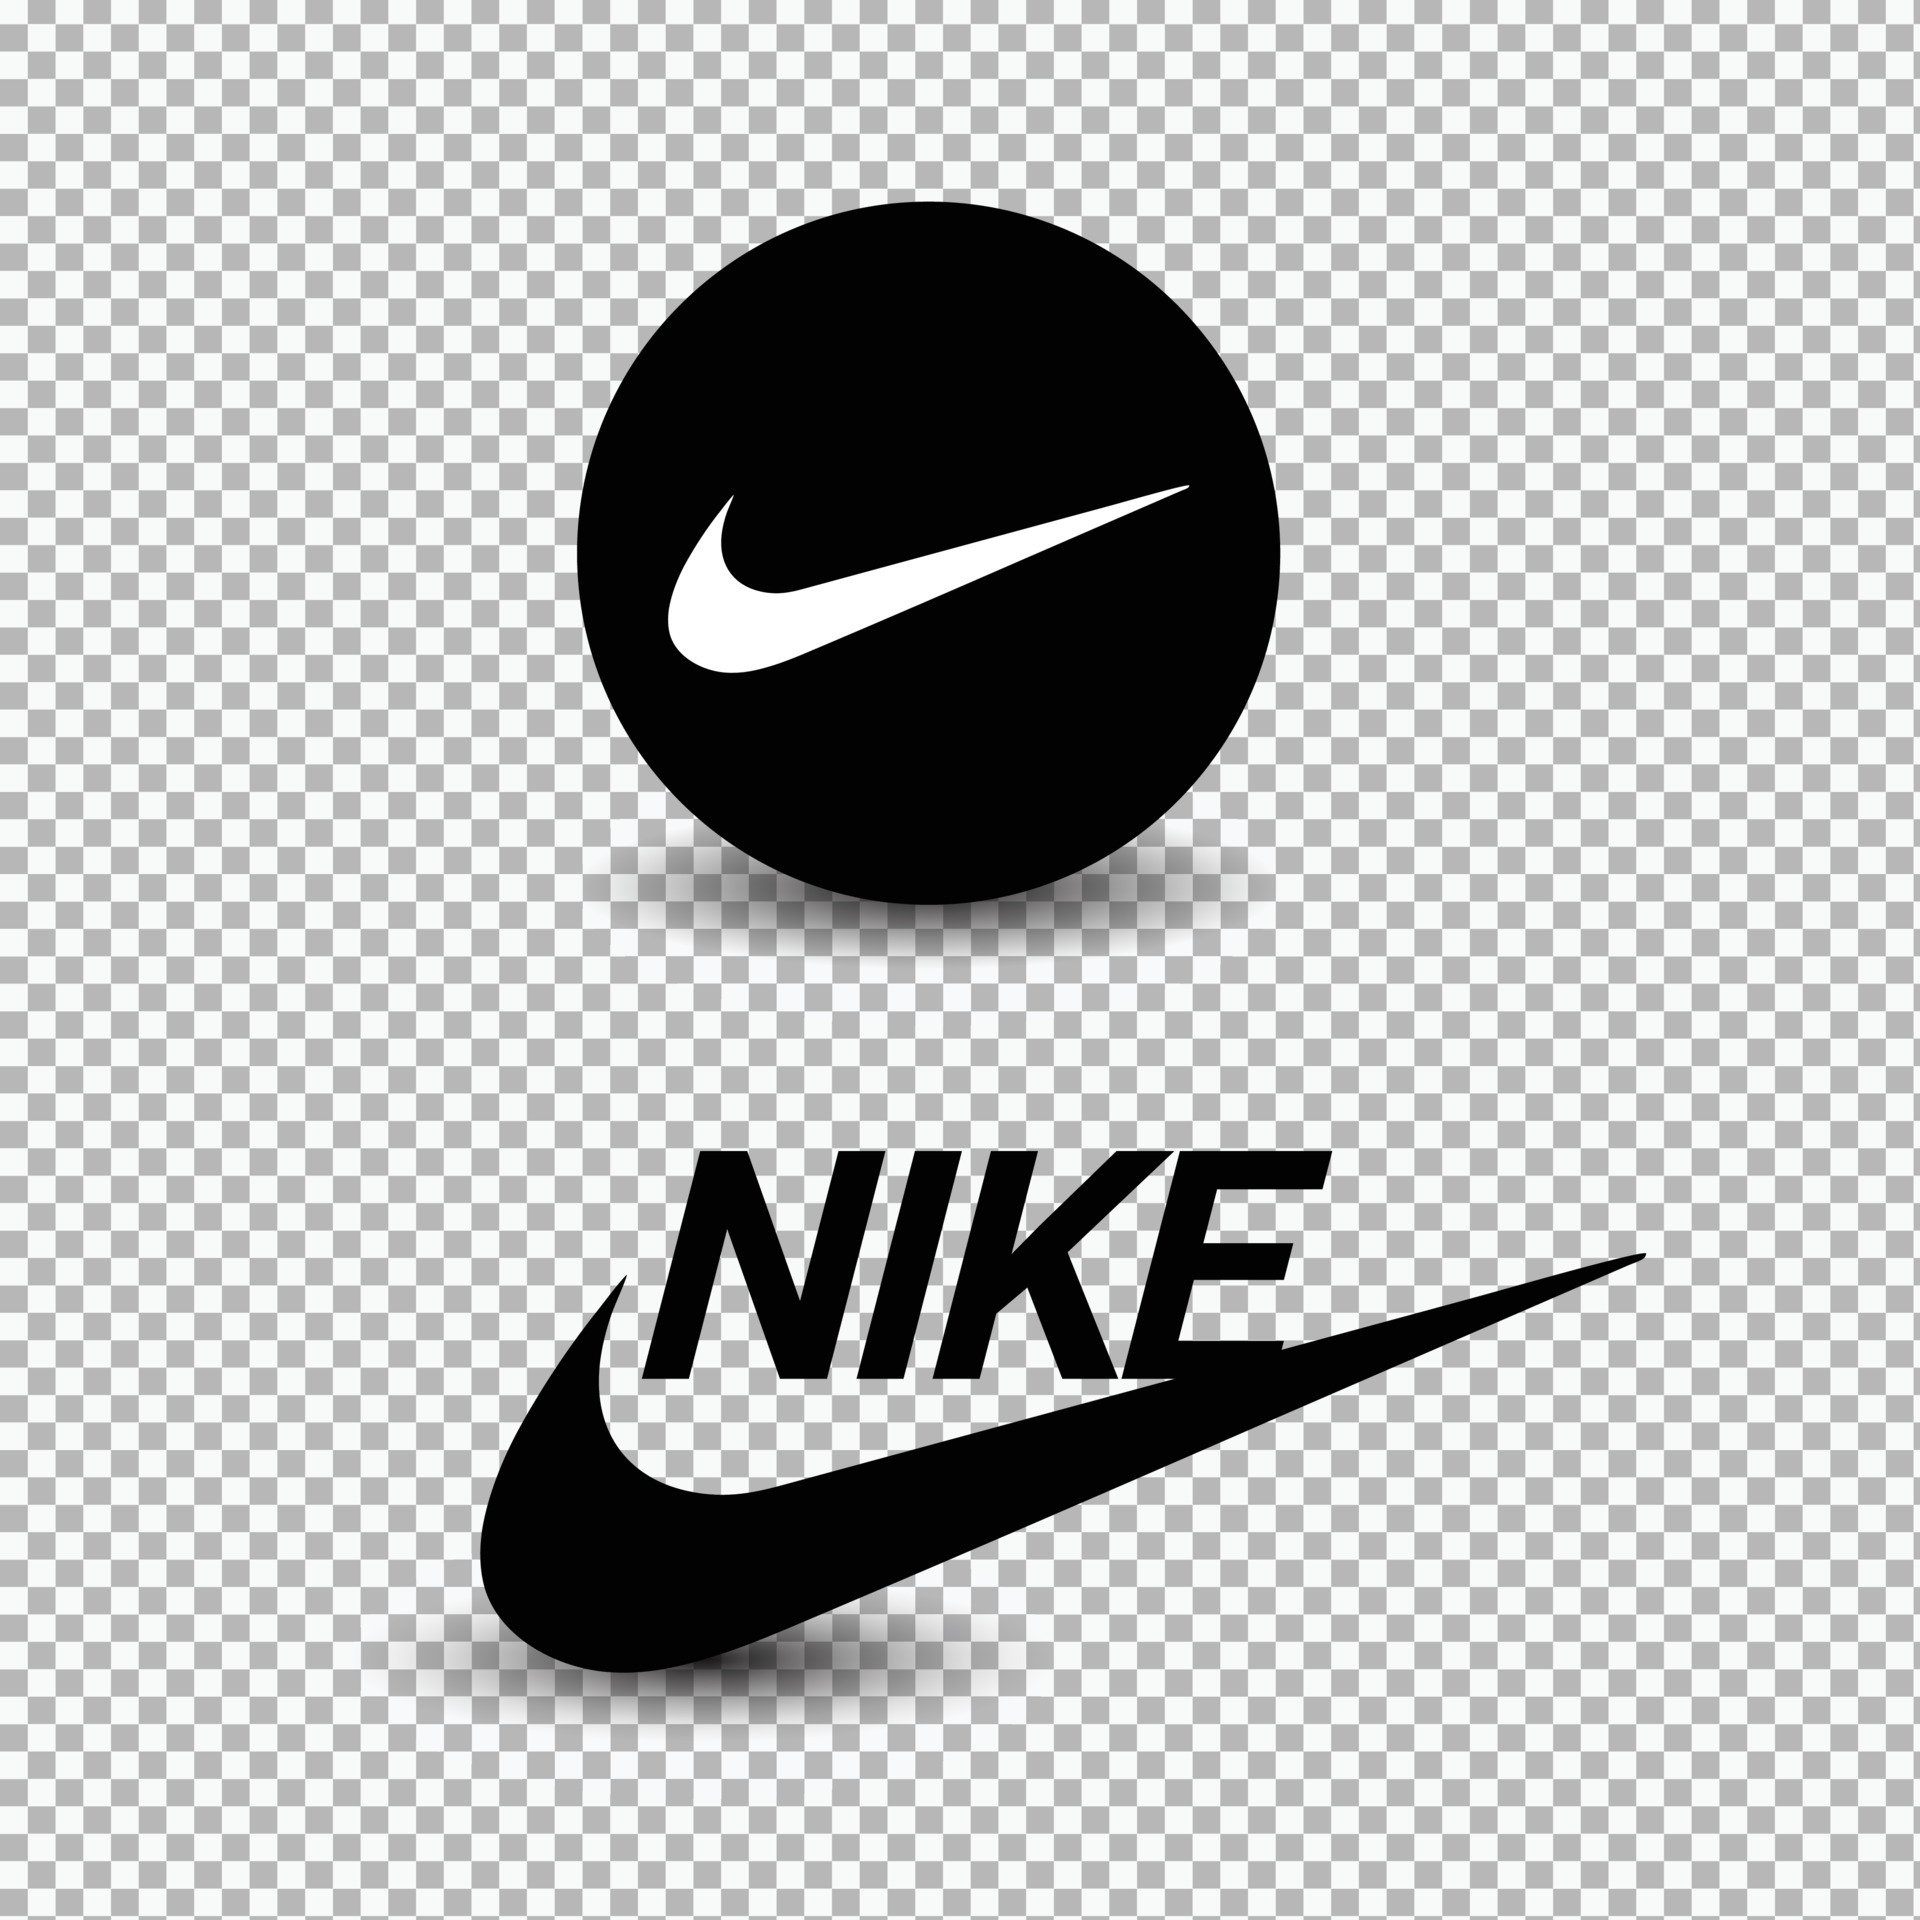 Nike logo vector on white background 6656882 Vector Art at Vecteezy